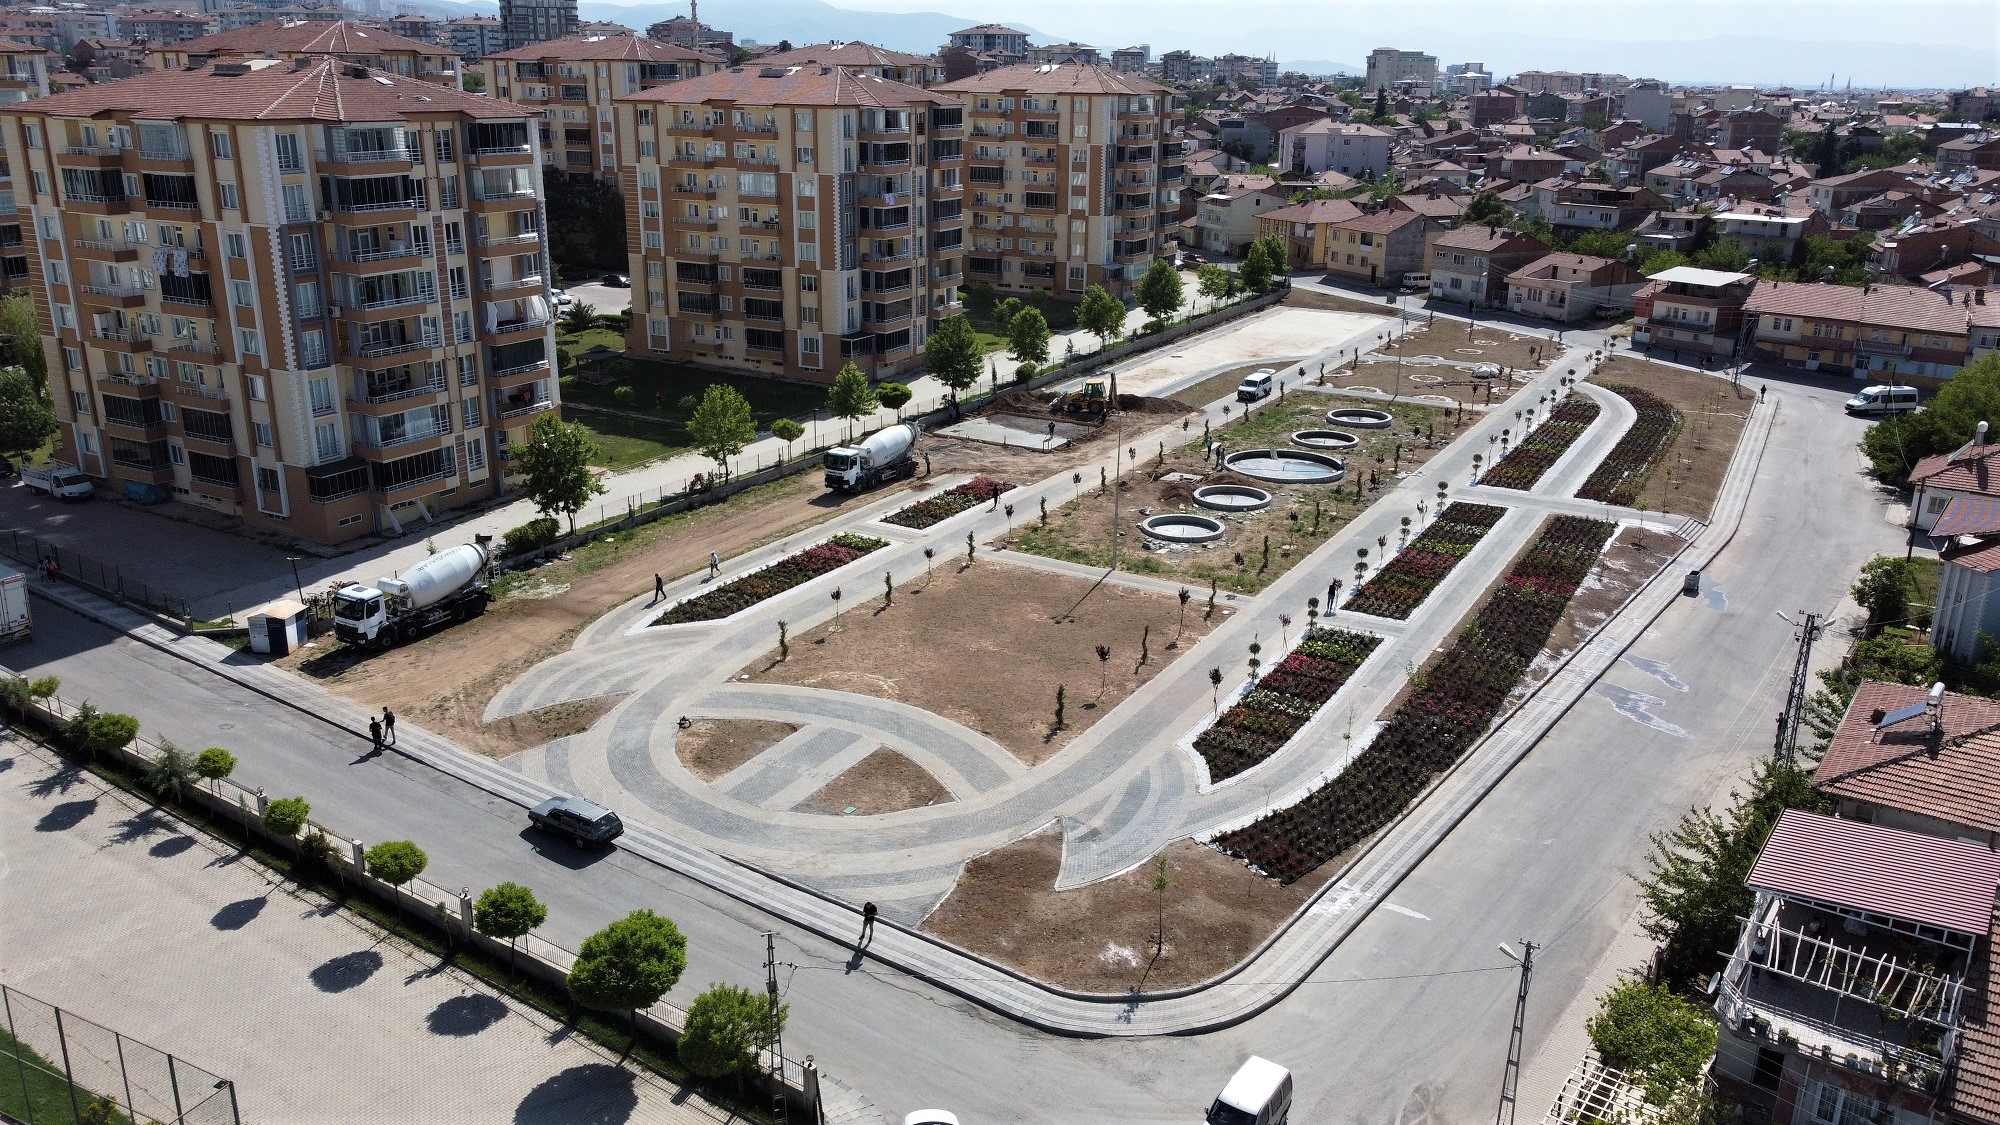 Battalgazi Belediye Başkanı Osman Güder’in talimatlarıyla 2021 yılında Park ve Bahçeler Müdürlüğü tarafından Tandoğan Mahallesinde bulunan Kısmet ve Dostlar sokak arasındaki 9 bin metrekarelik alanda yapımına başlanılan “Gül Bahçesi Projesi”nin çalışmaları aralıksız devam ediyor.